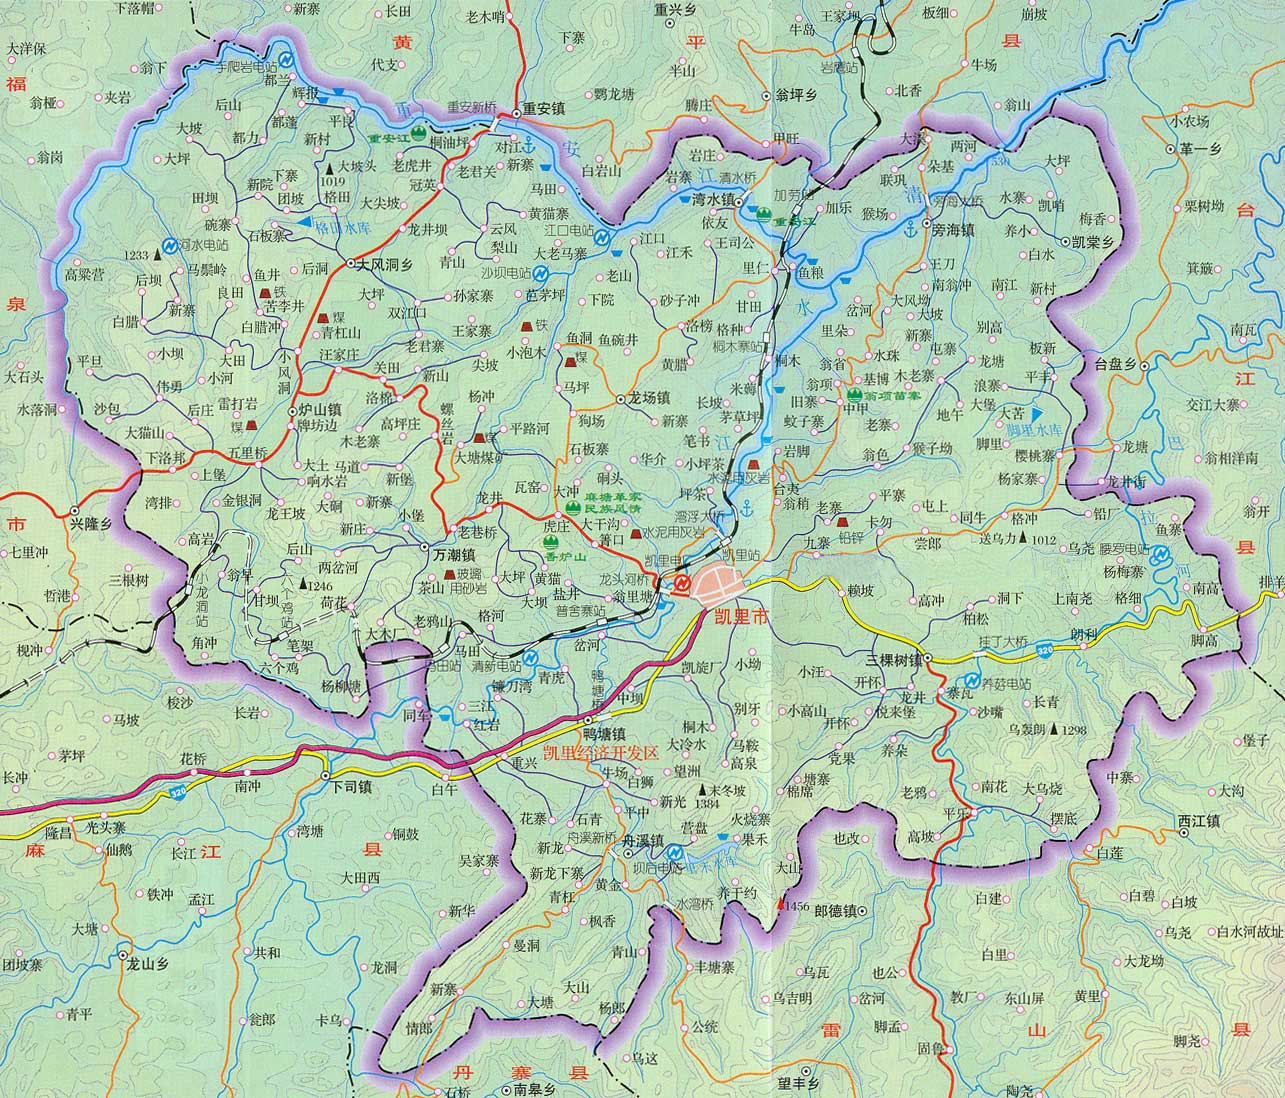 贵州凯里市地图|贵州凯里市地图全图高清版大图片|旅途风景图片网|www.visacits.com